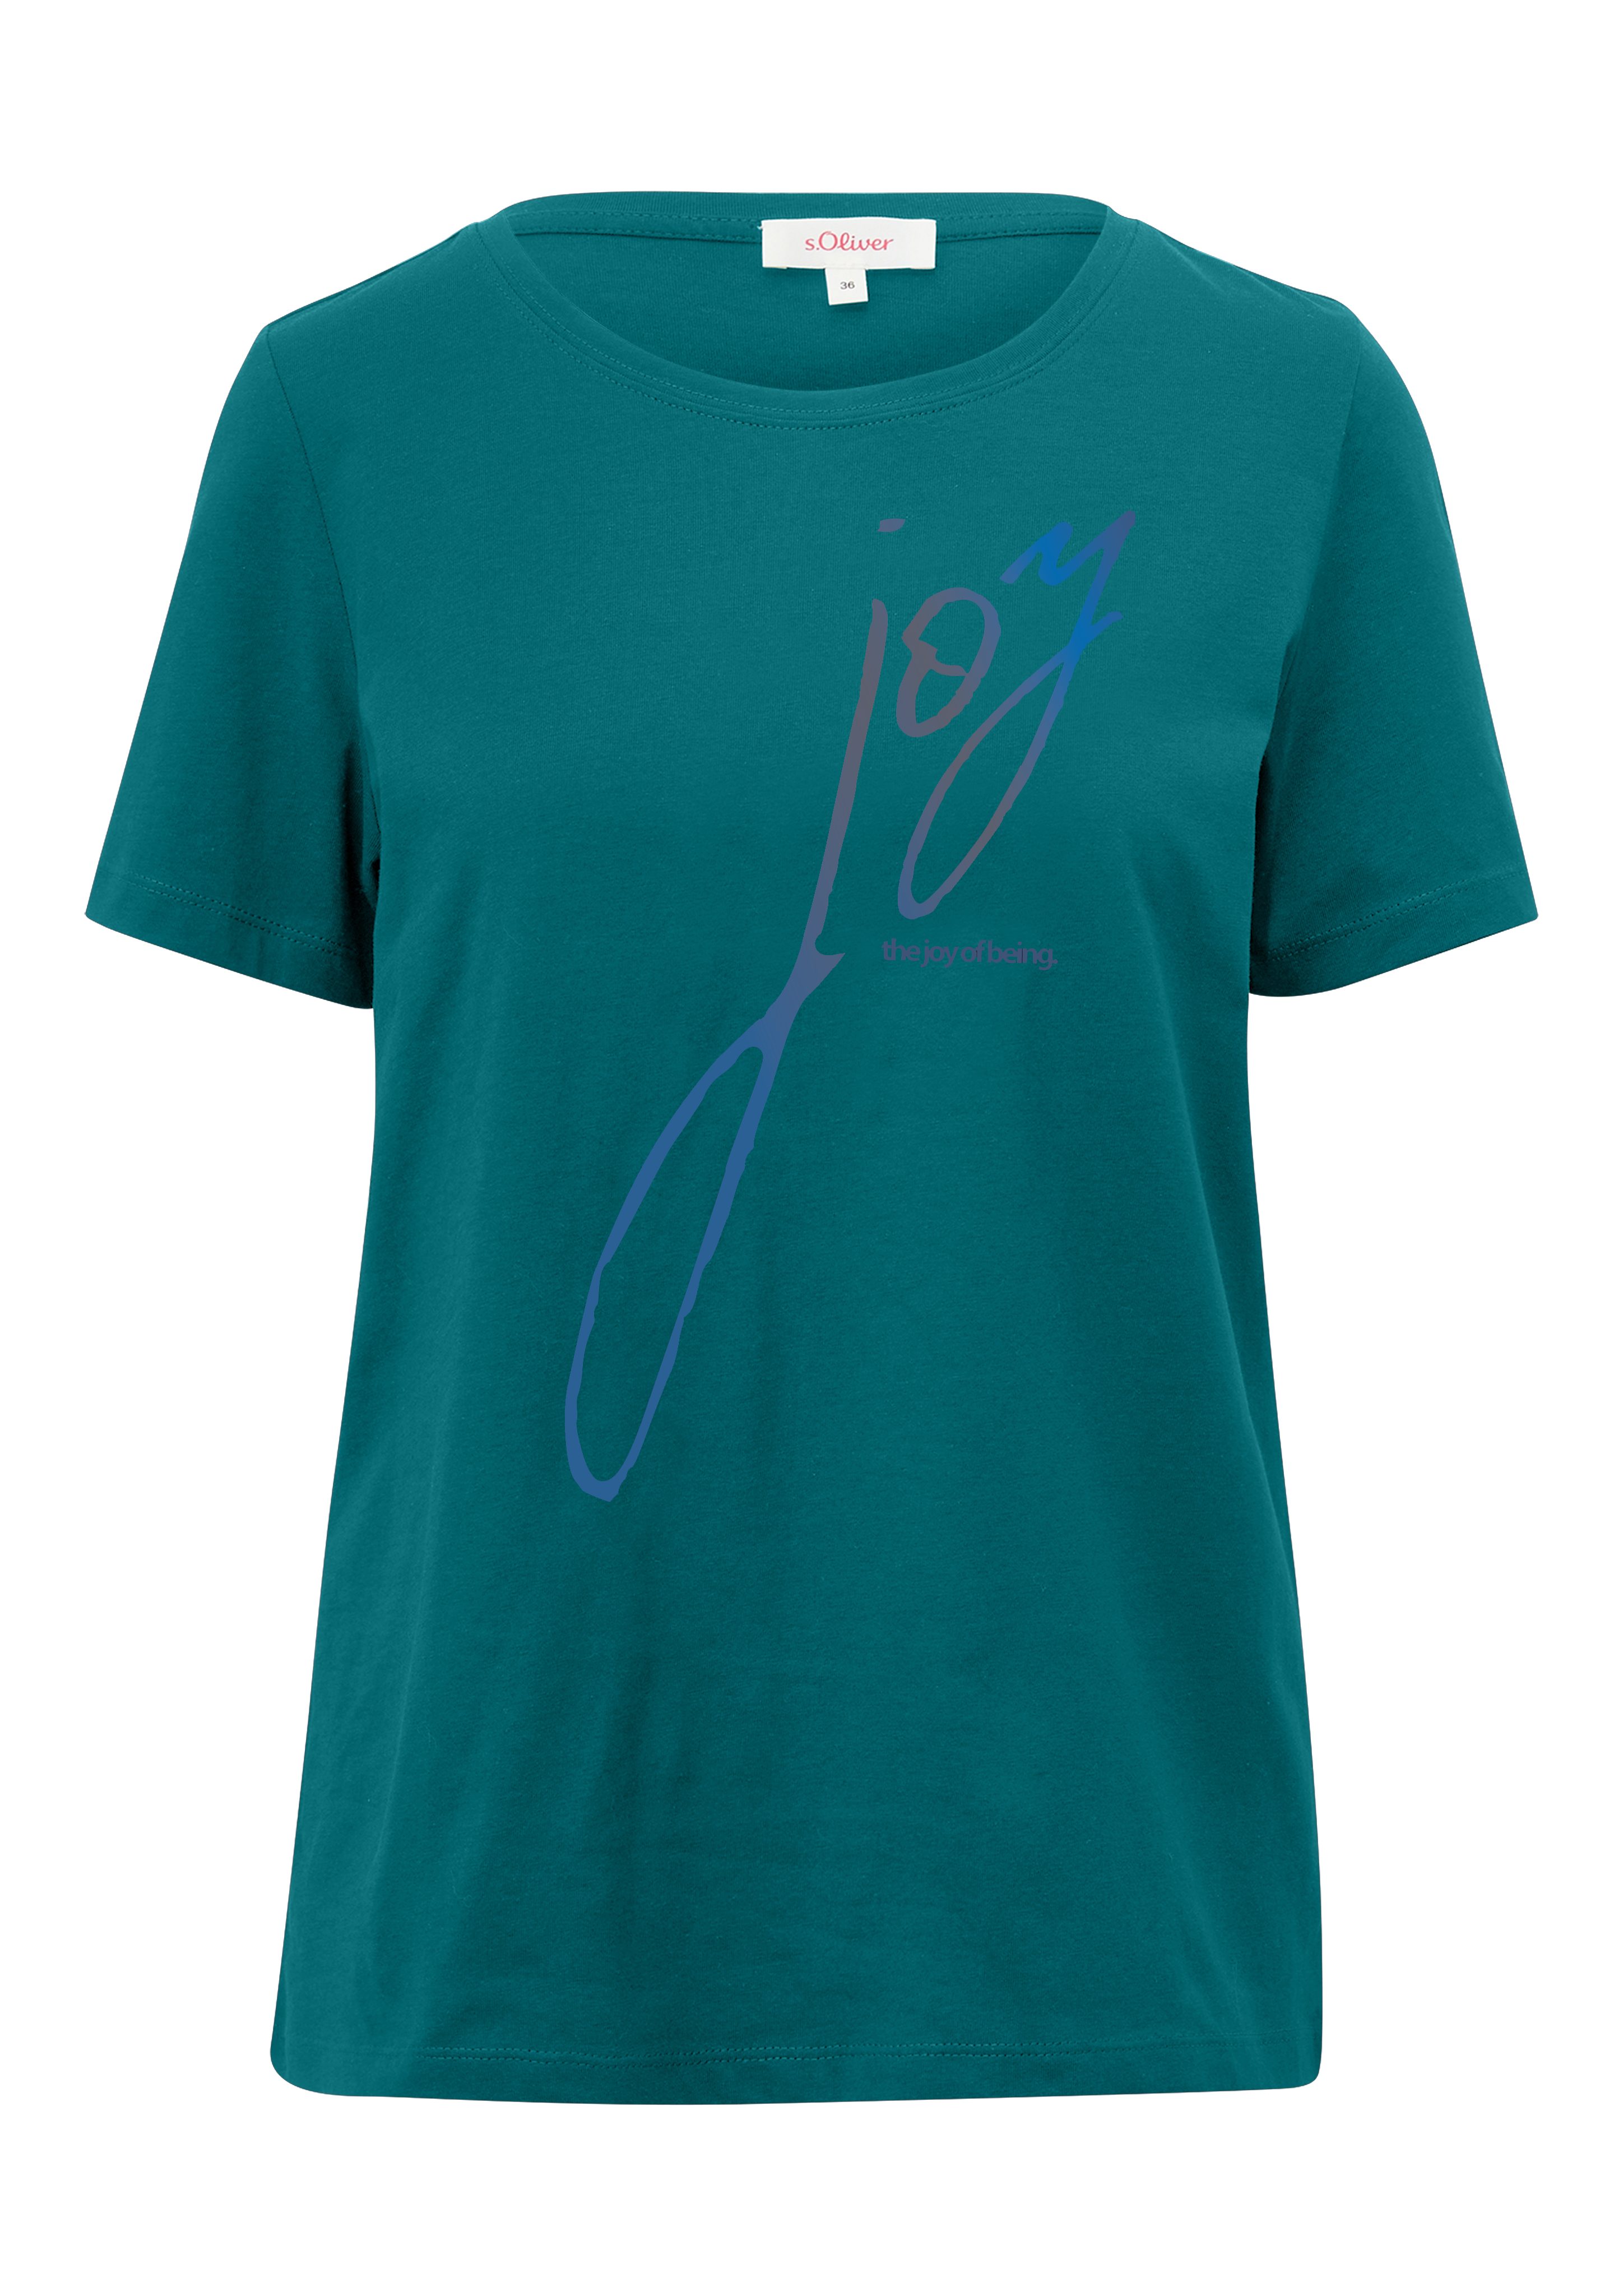 s.Oliver T-Shirt mit blue Aufschrift green vorne